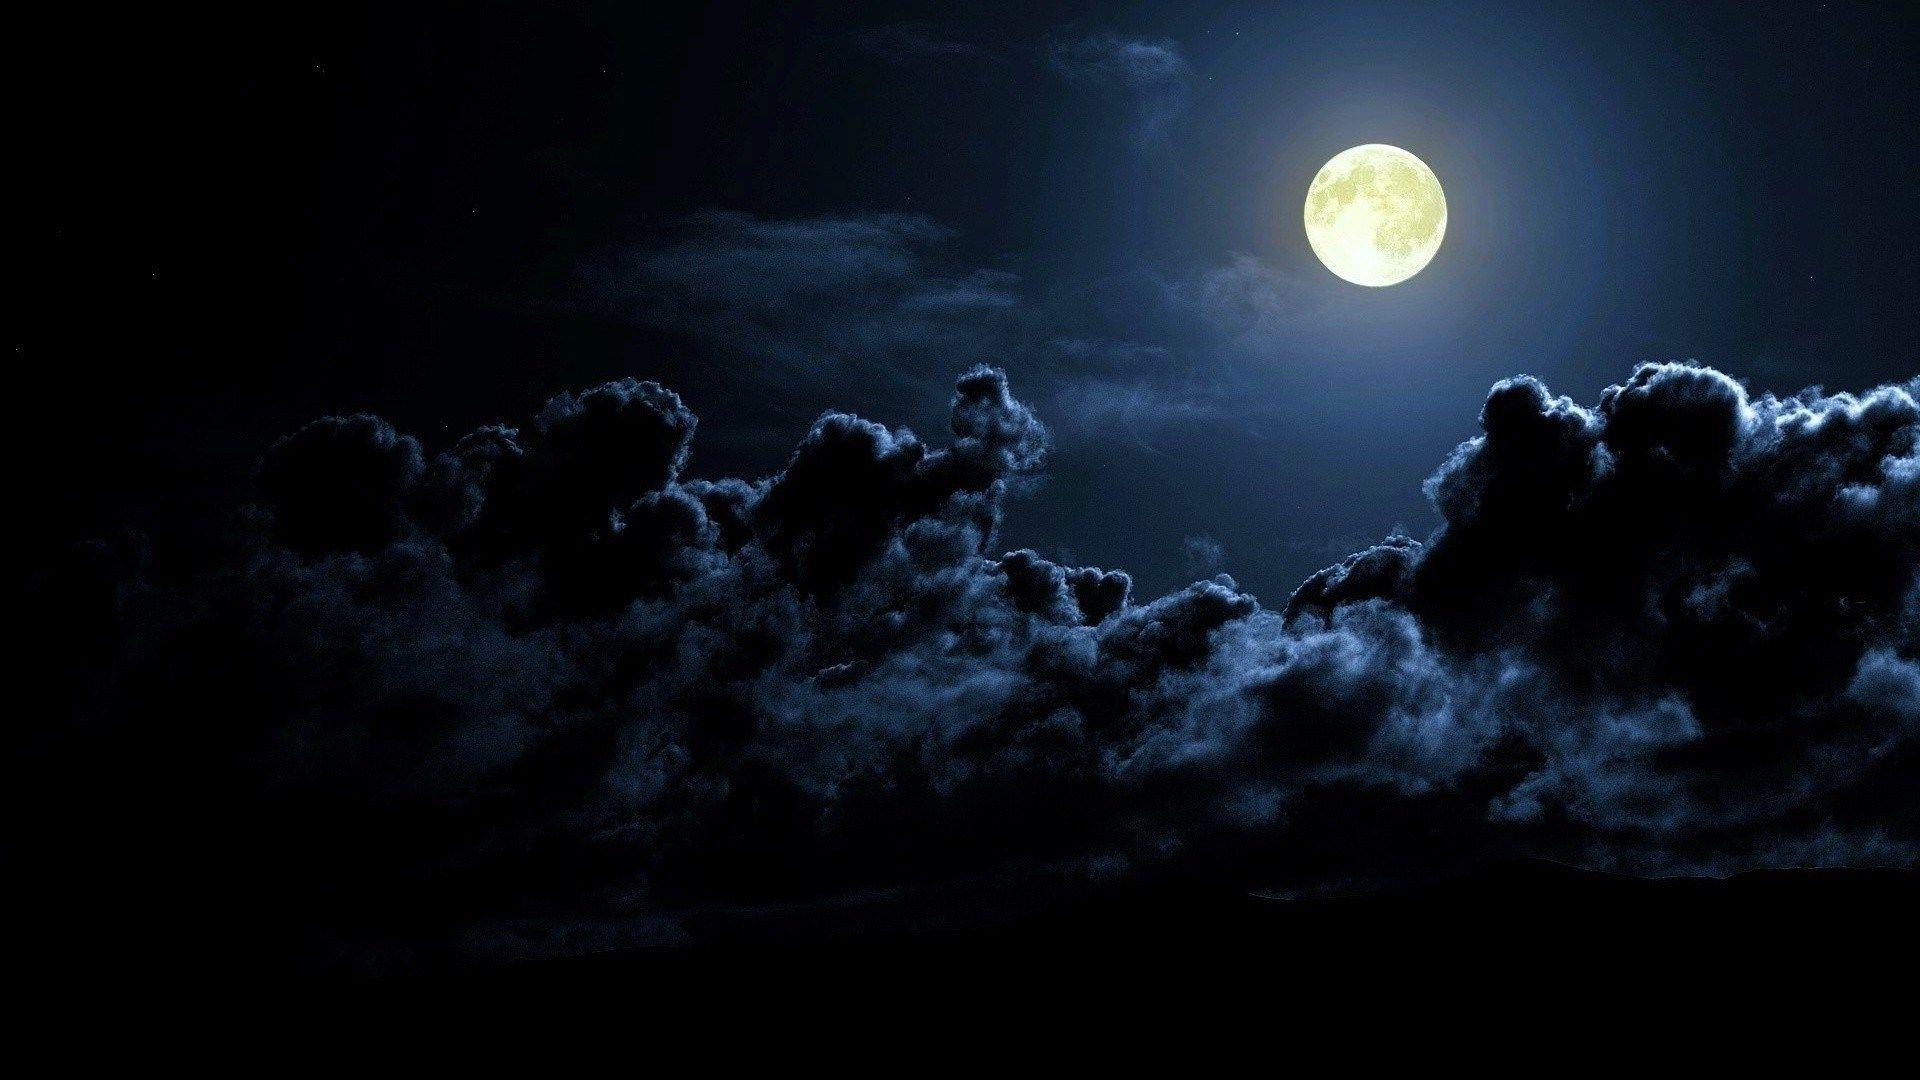 moon wallpaper for mac desktop. Full moon night, Full moon, Moon